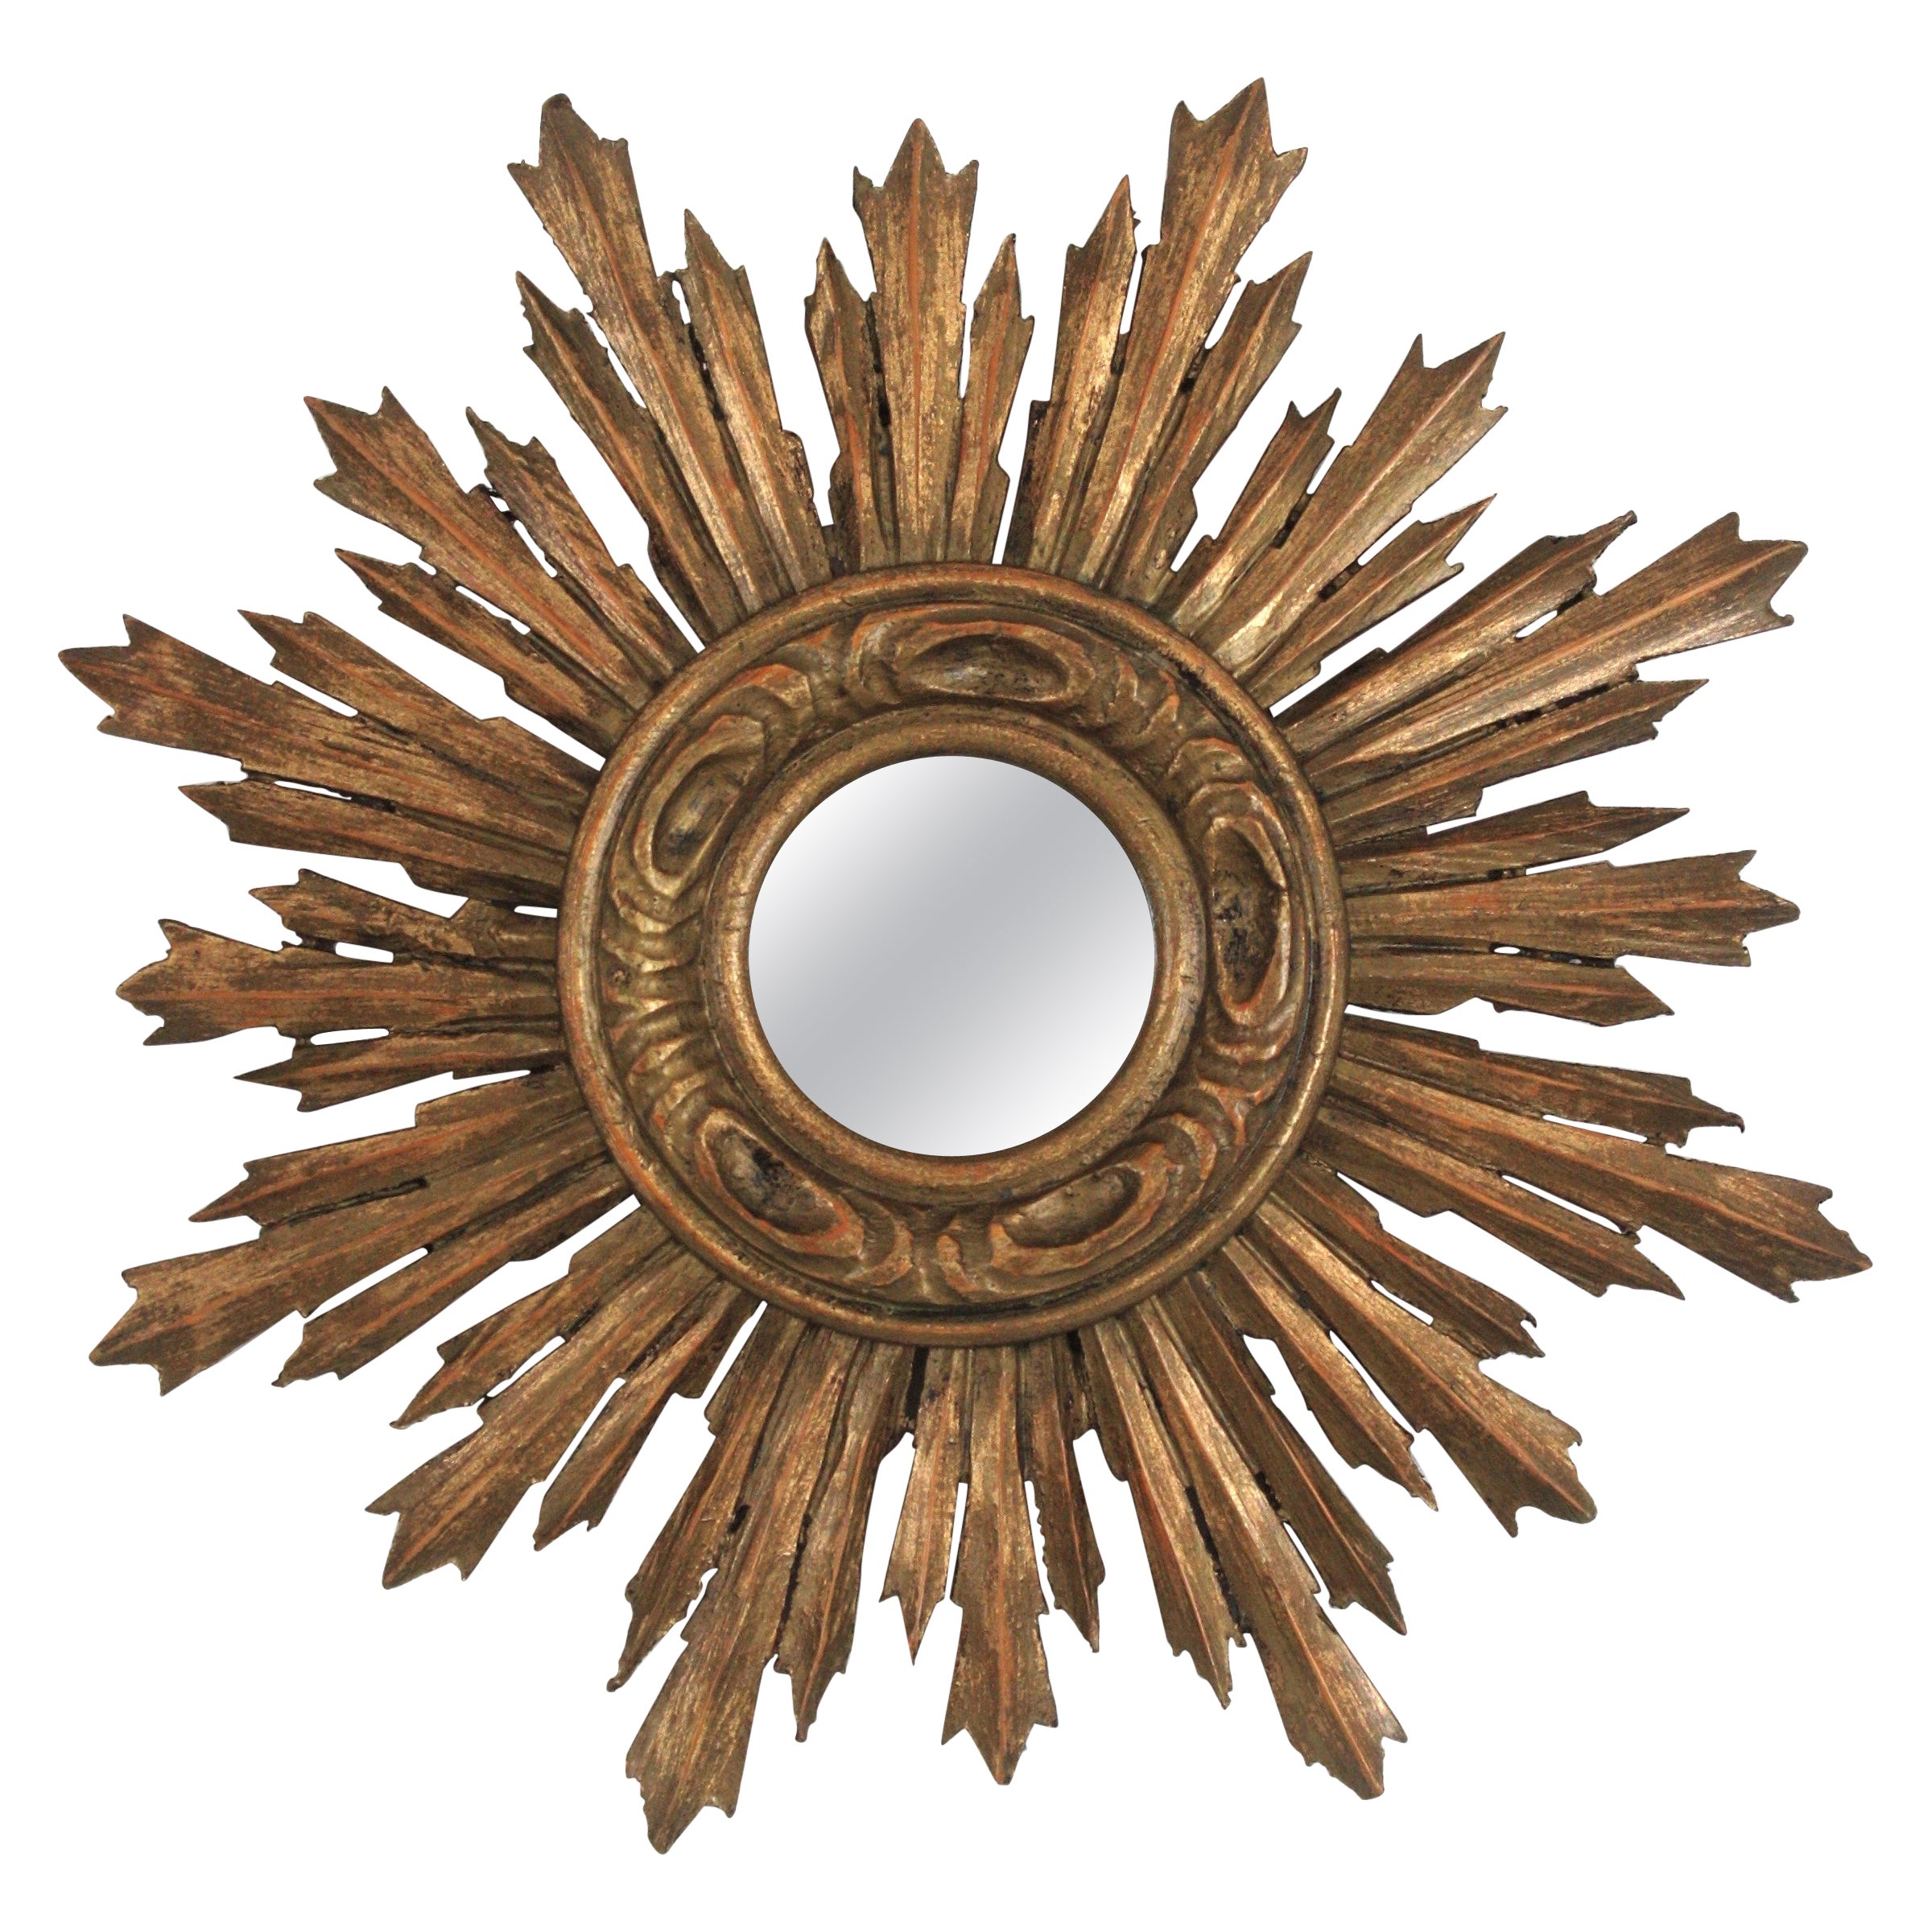 Sonnenschliff-Giltwood-Spiegel in kleinem Maßstab, Spanischer Barock 